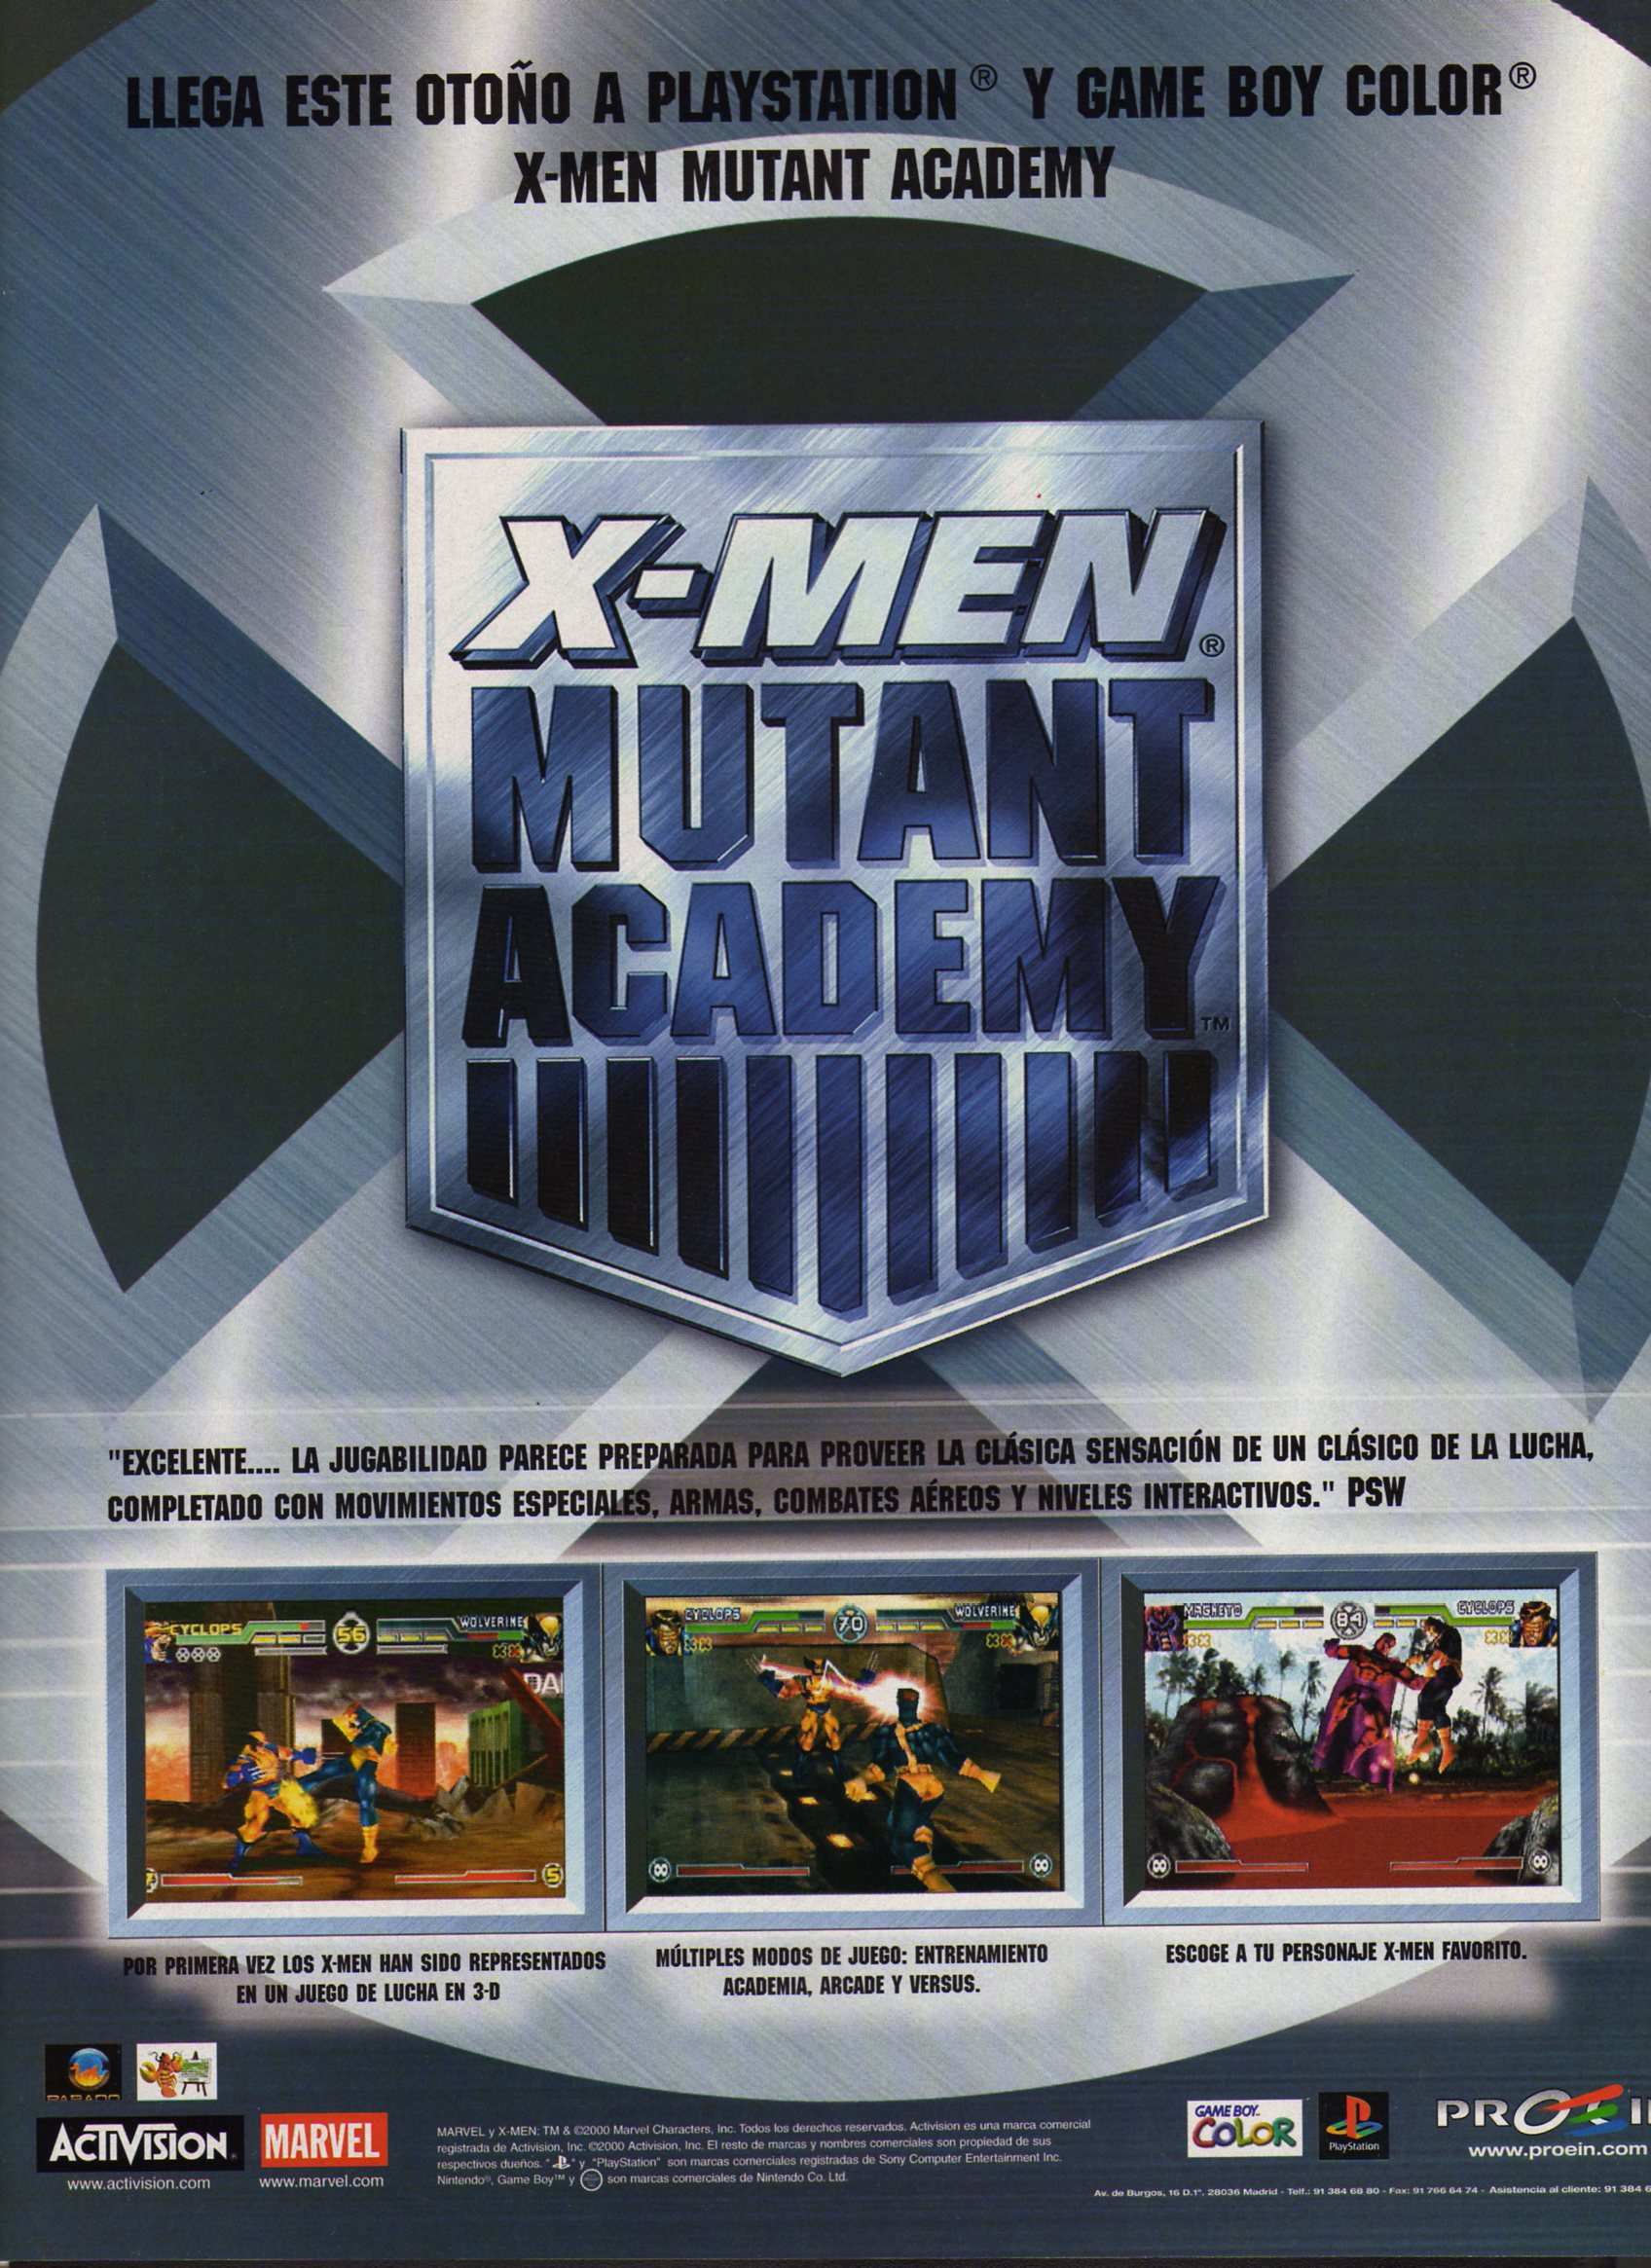 download X-Men: Mutant Academy